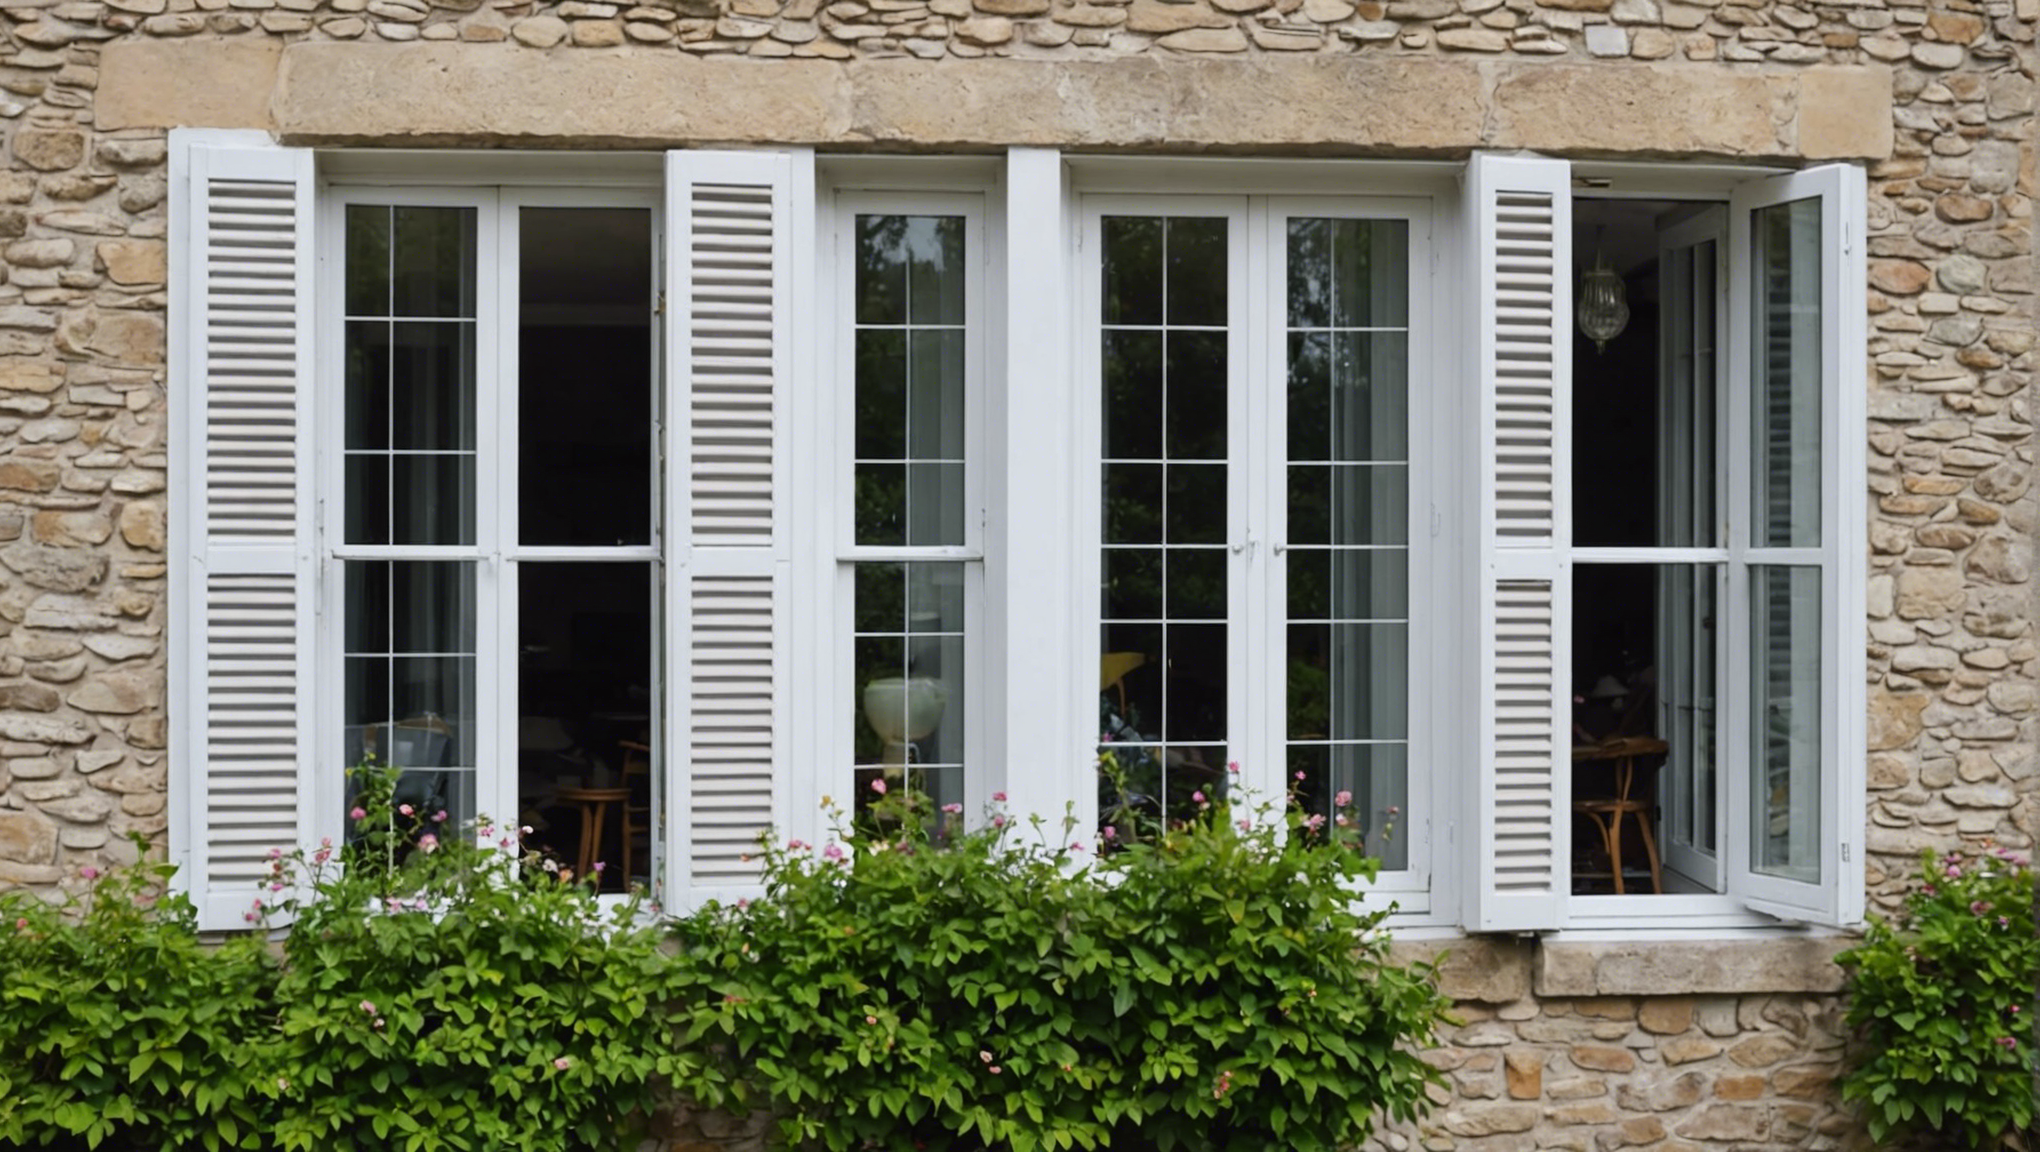 découvrez nos conseils pour choisir la meilleure fenêtre pour votre maison afin d'améliorer son esthétique, son isolation et sa sécurité.